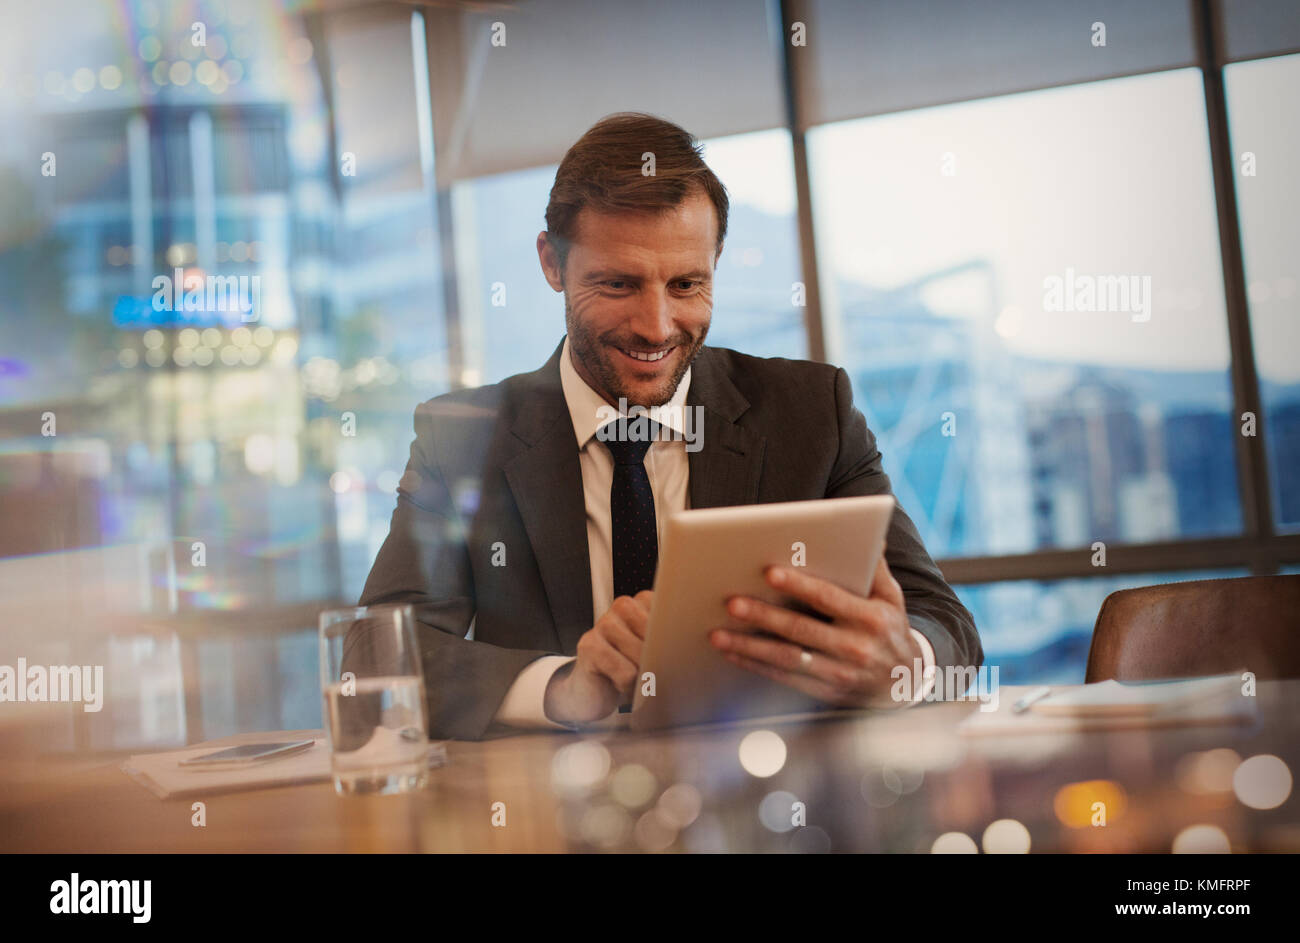 Lächelnder Geschäftsmann mit digitalem Tablet im Konferenzraum Stockfoto